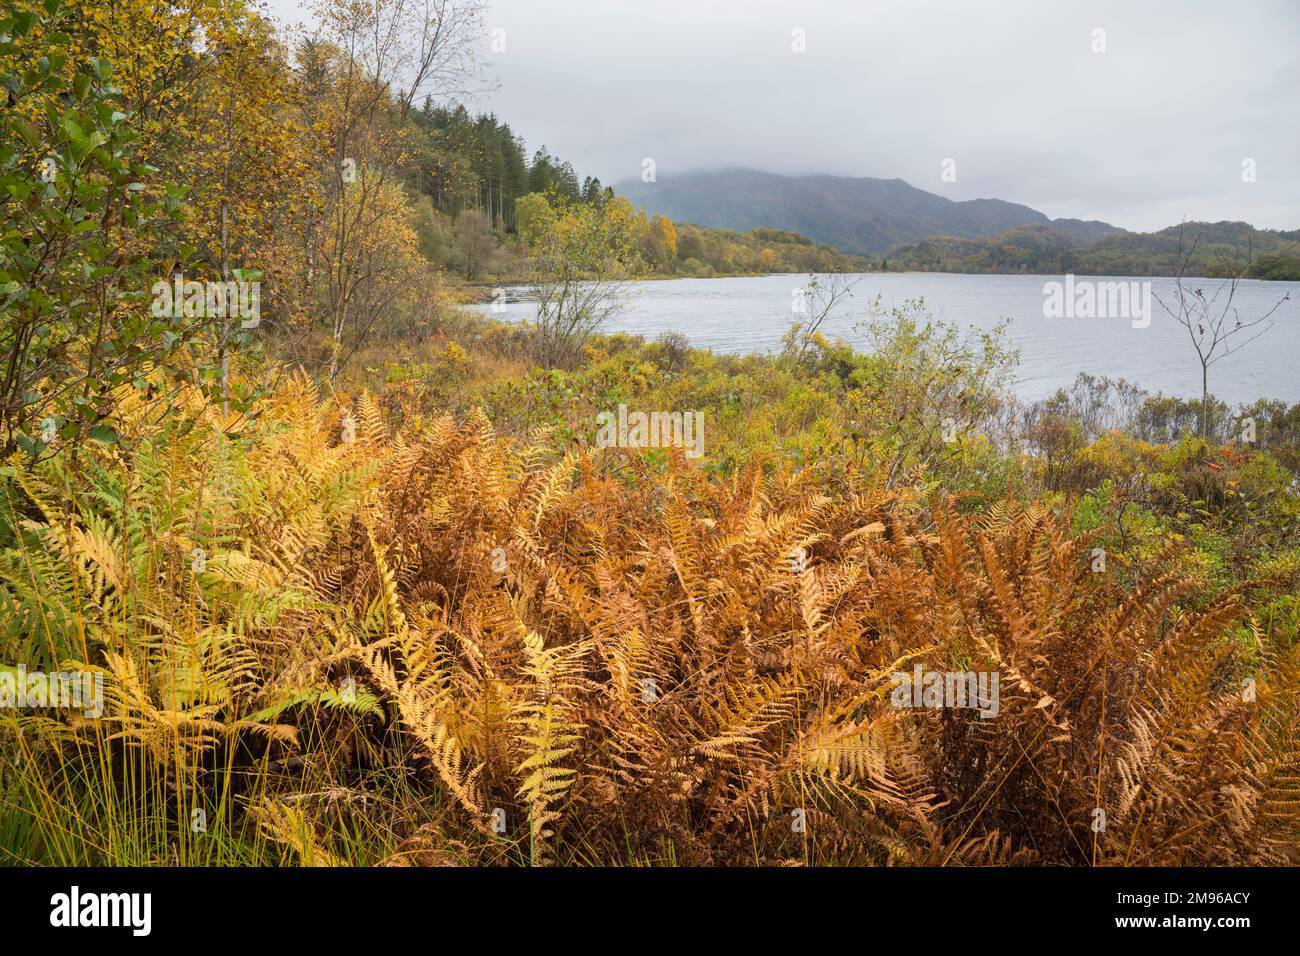 Loch Achray in autumn, Loch Lomond and Trossachs National Park, Scotland Stock Photo